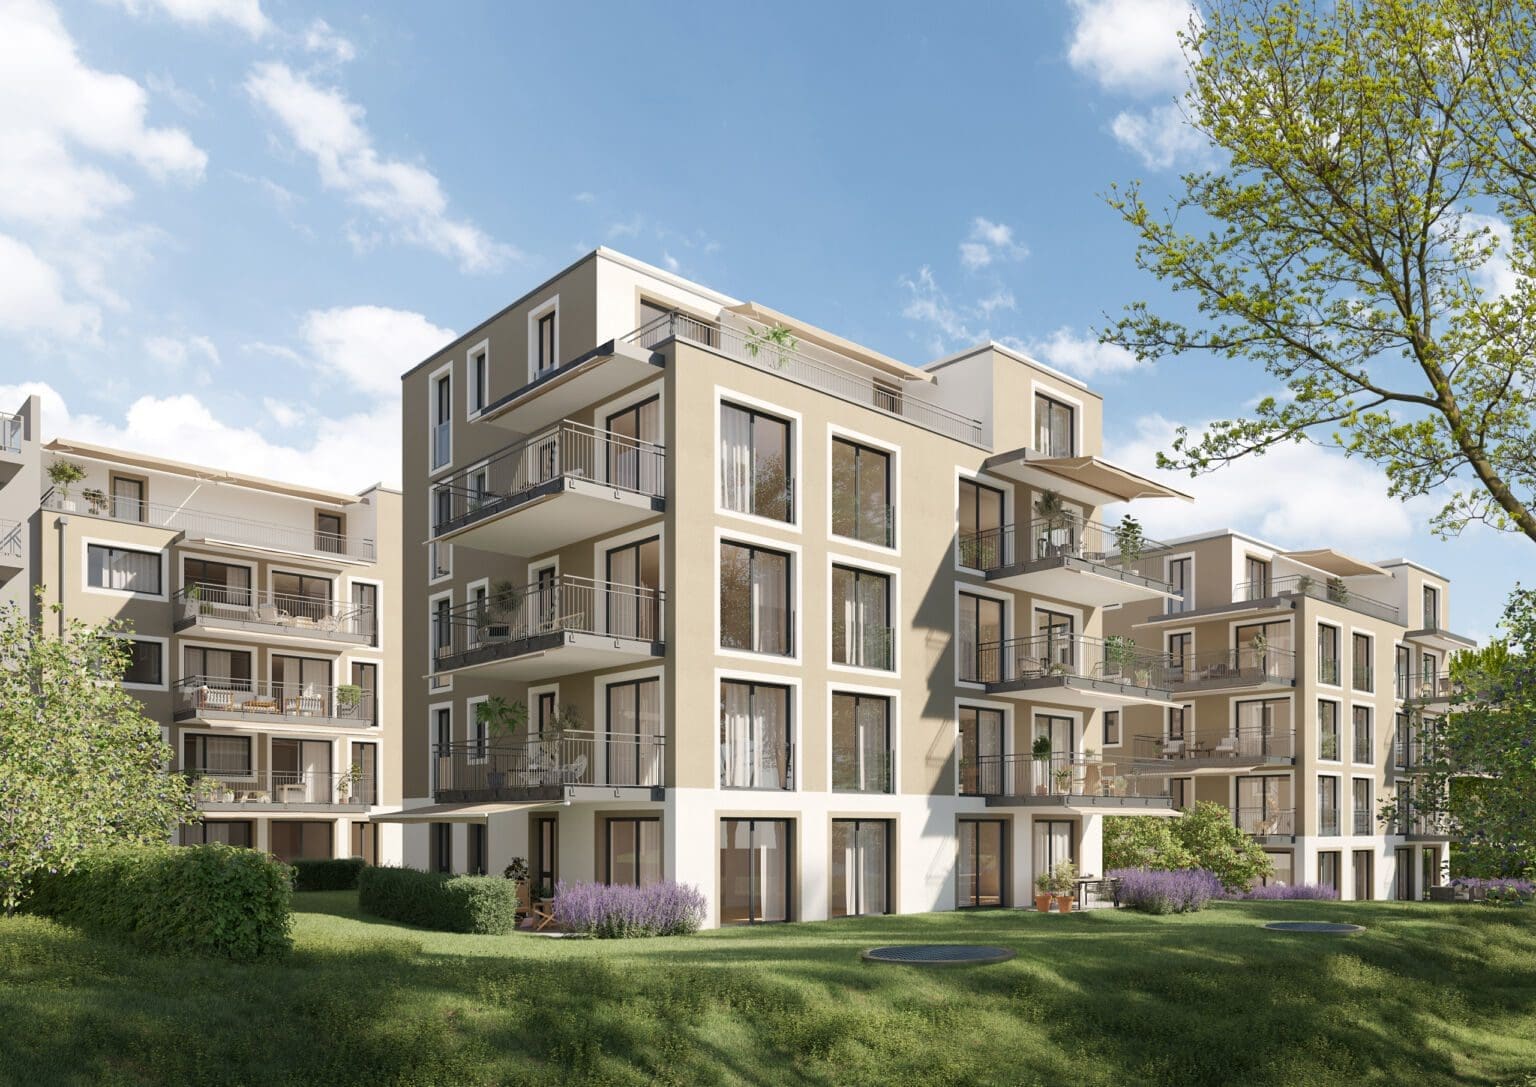 Architekturvisualisierung fuer Neubau Immobilien in Zuerich